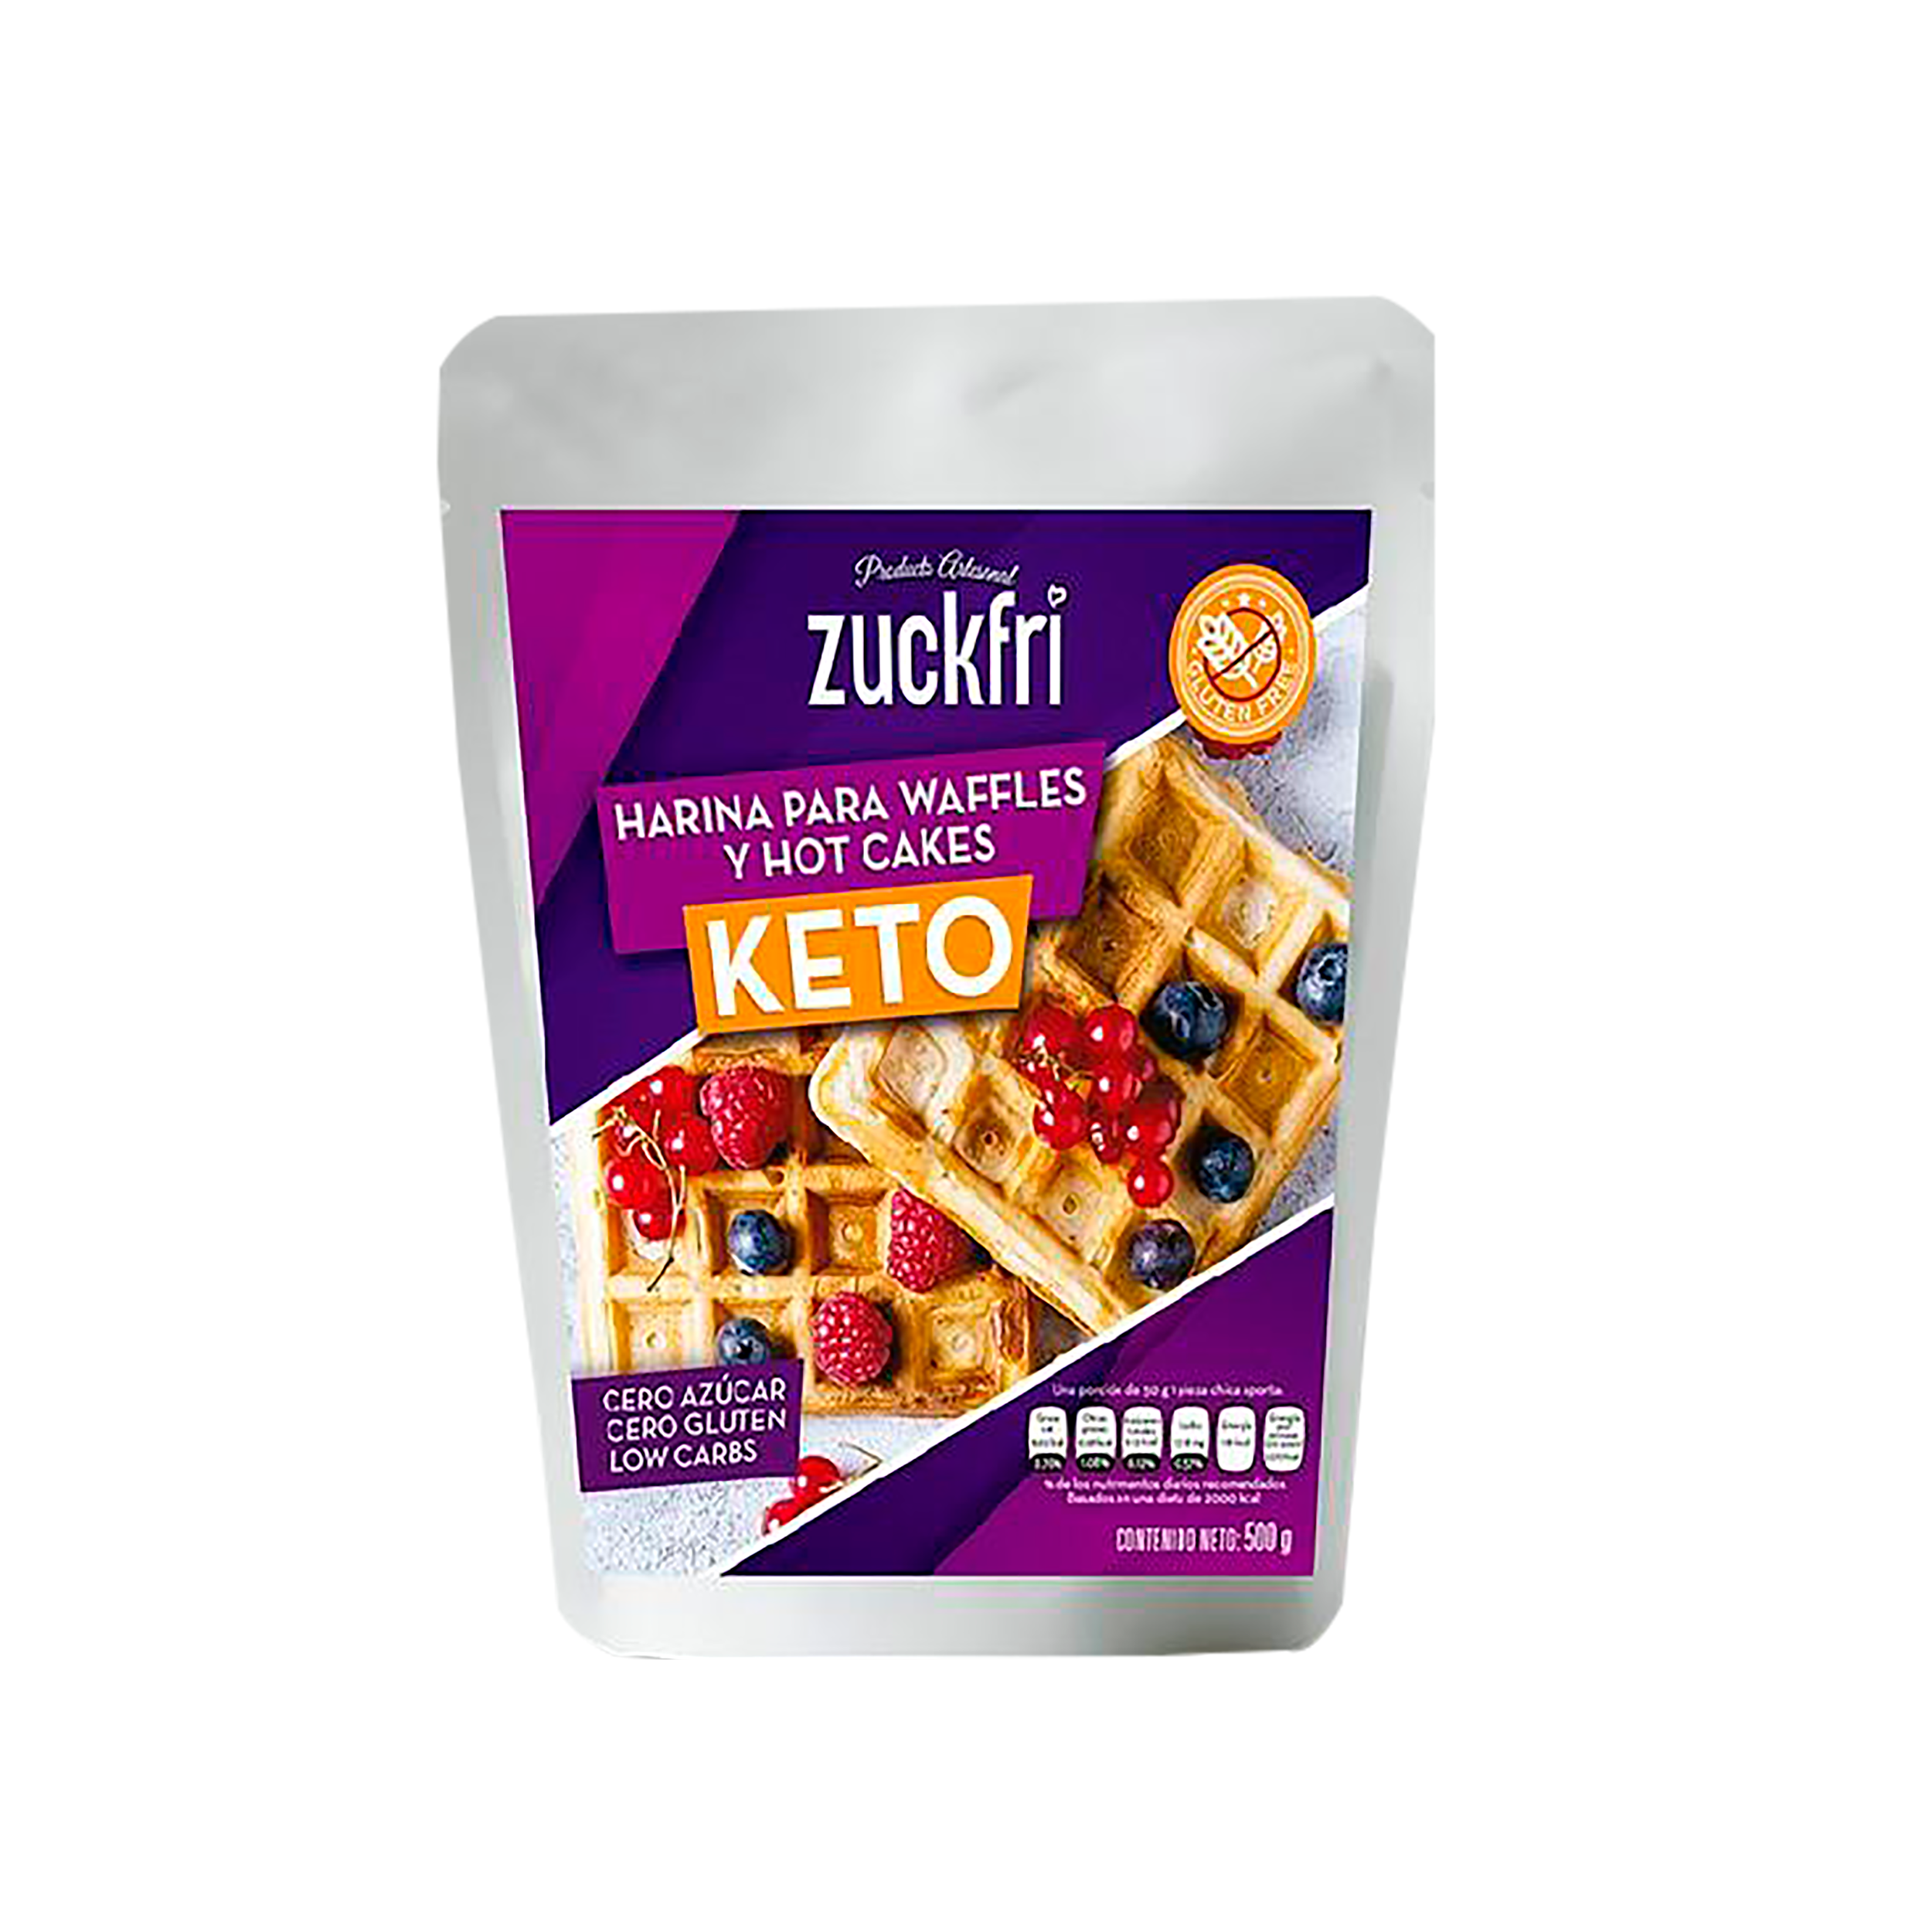 Zuckfri -Harina para waffles y hot cakes keto 500 G